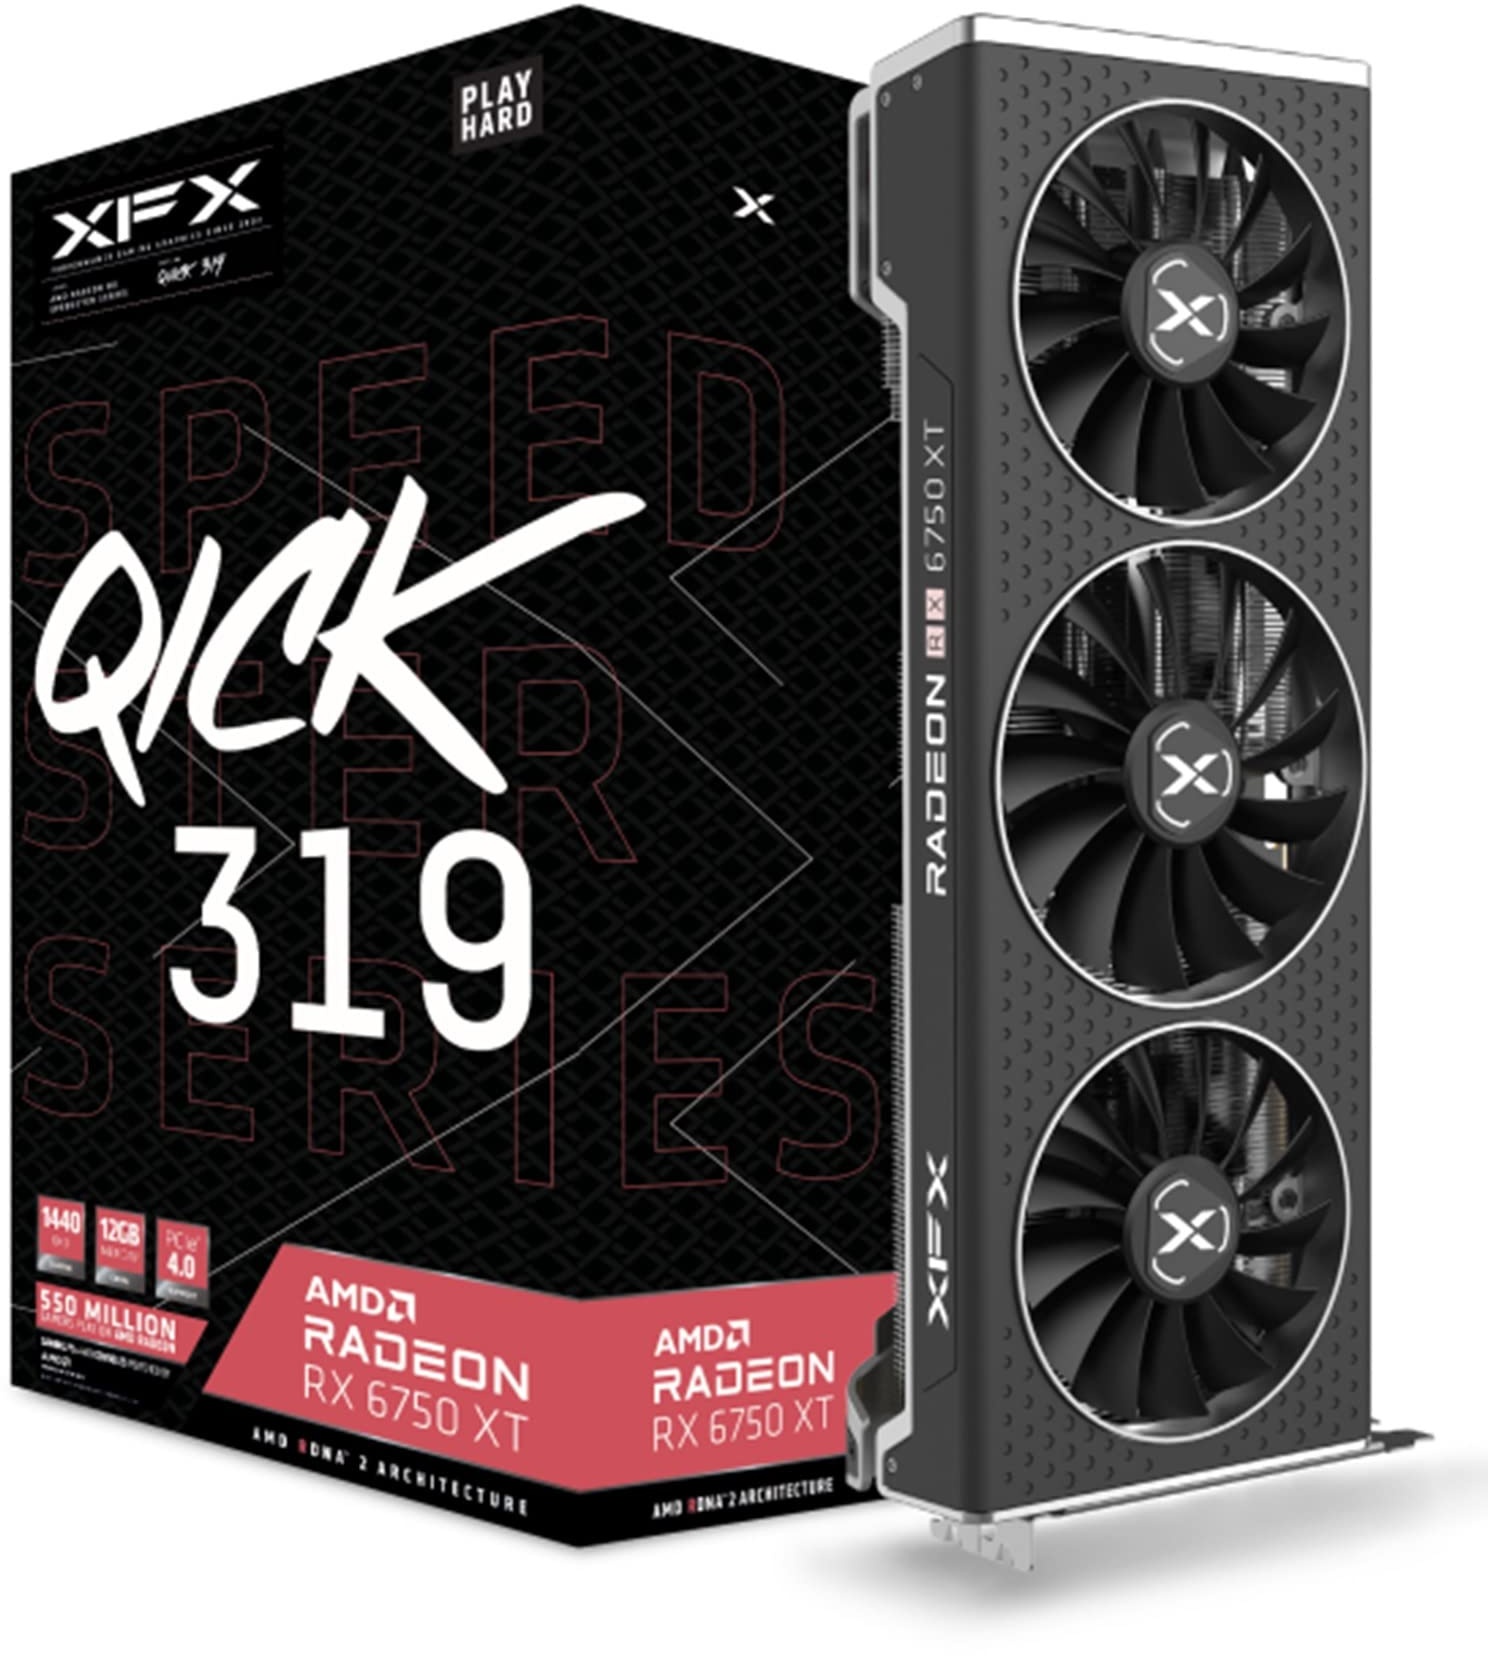 XFX Speedster QICK319 Radeon RX 6750XT CORE Gaming Grafikkarte mit 12GB GDDR6 HDMI 3xDP, AMD RDNATM 2 (RX-675XYJFDP)